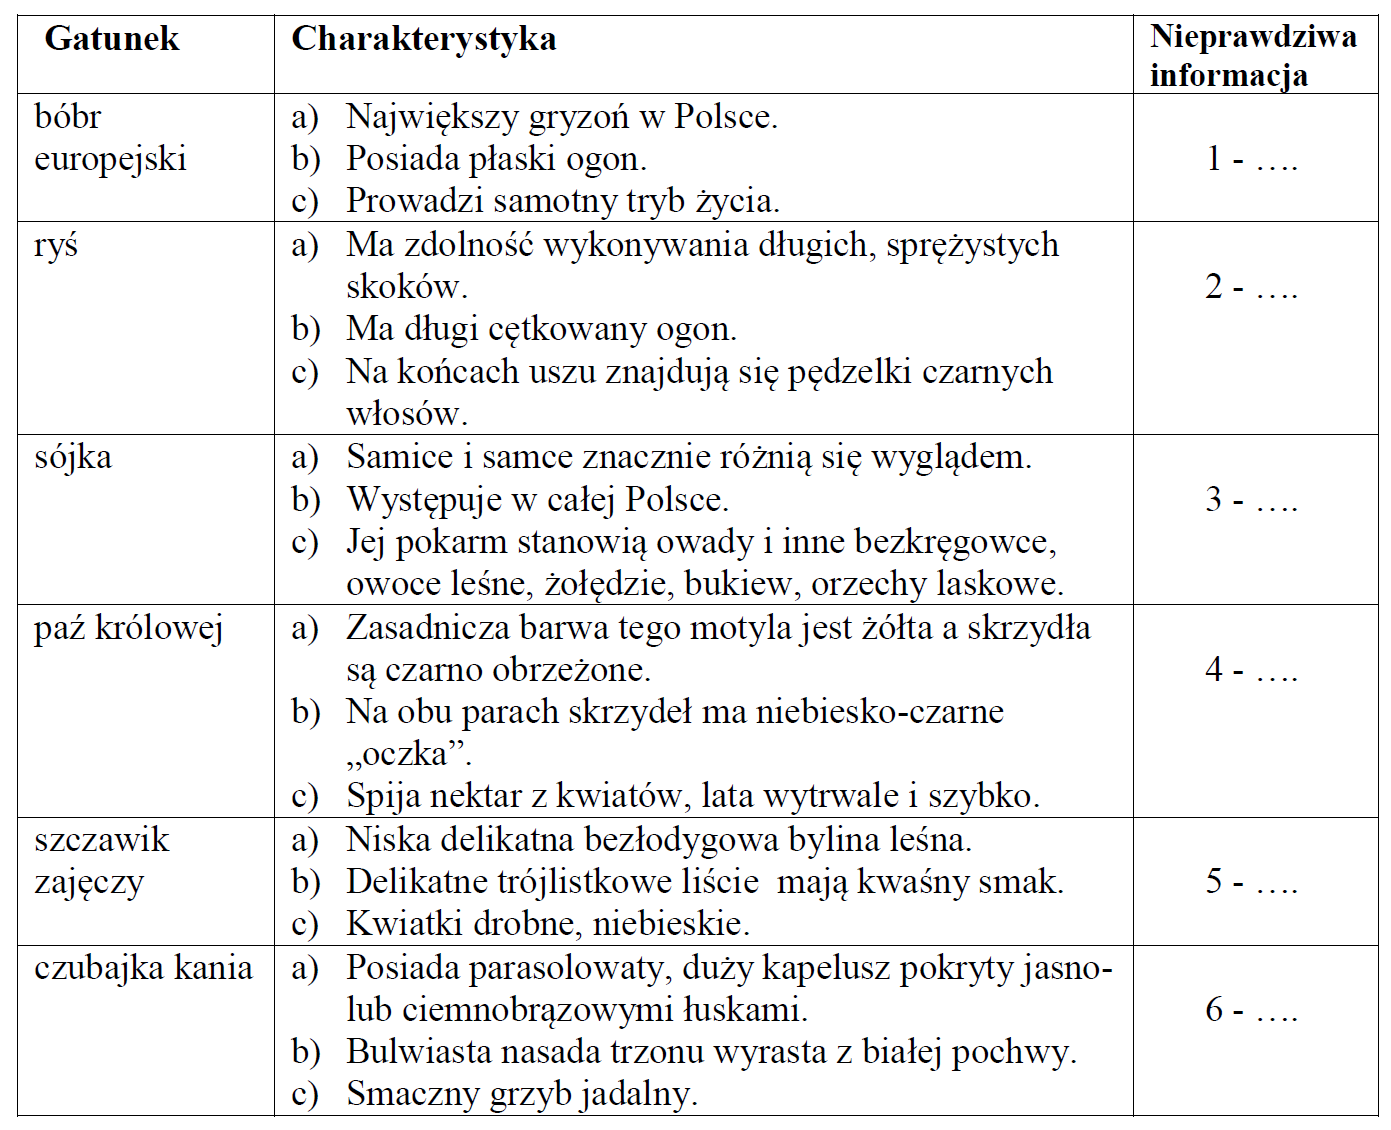 Charakterystyka gatunków żyjących w Polsce